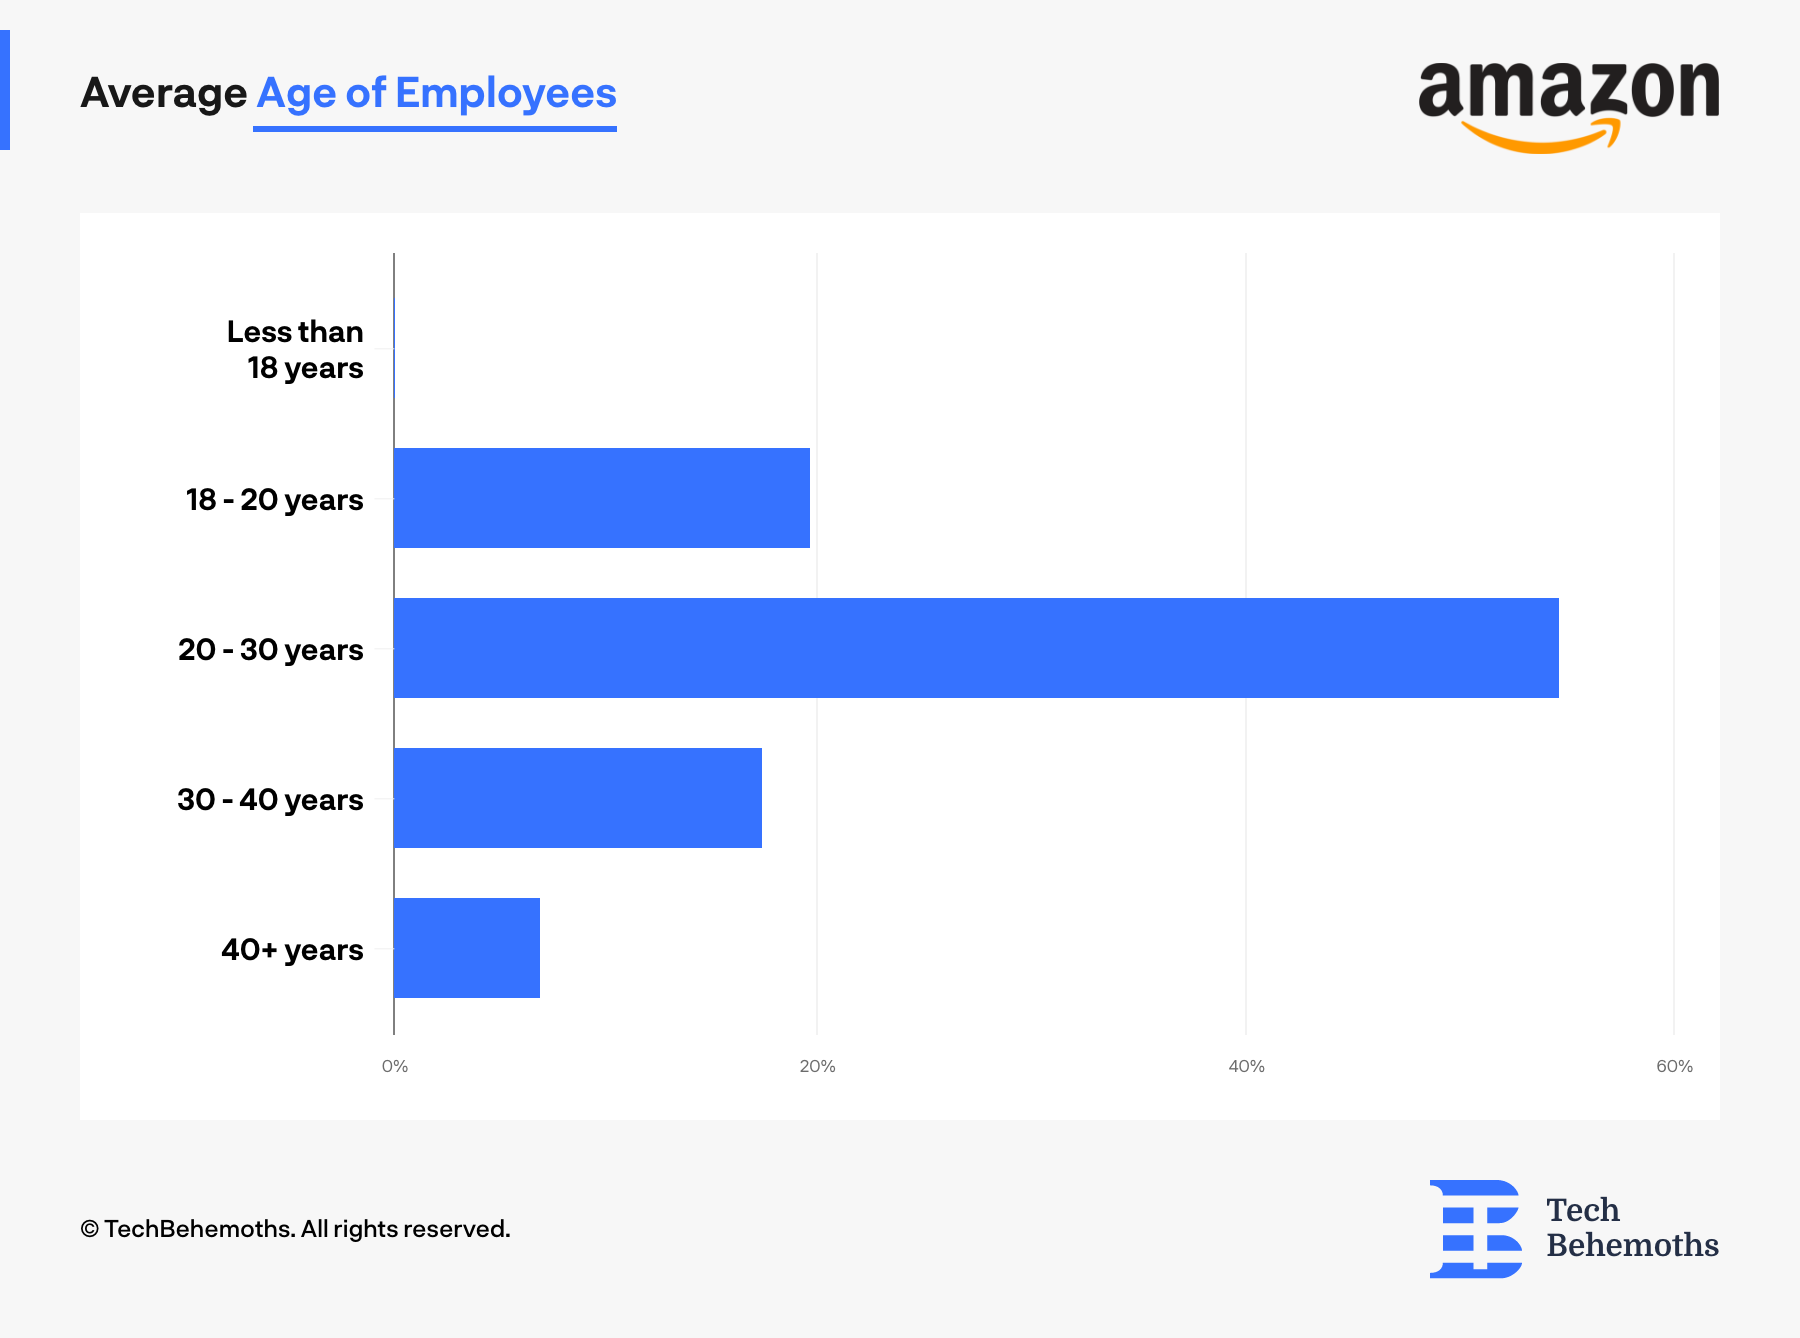 Average Age of Employees at Amazon